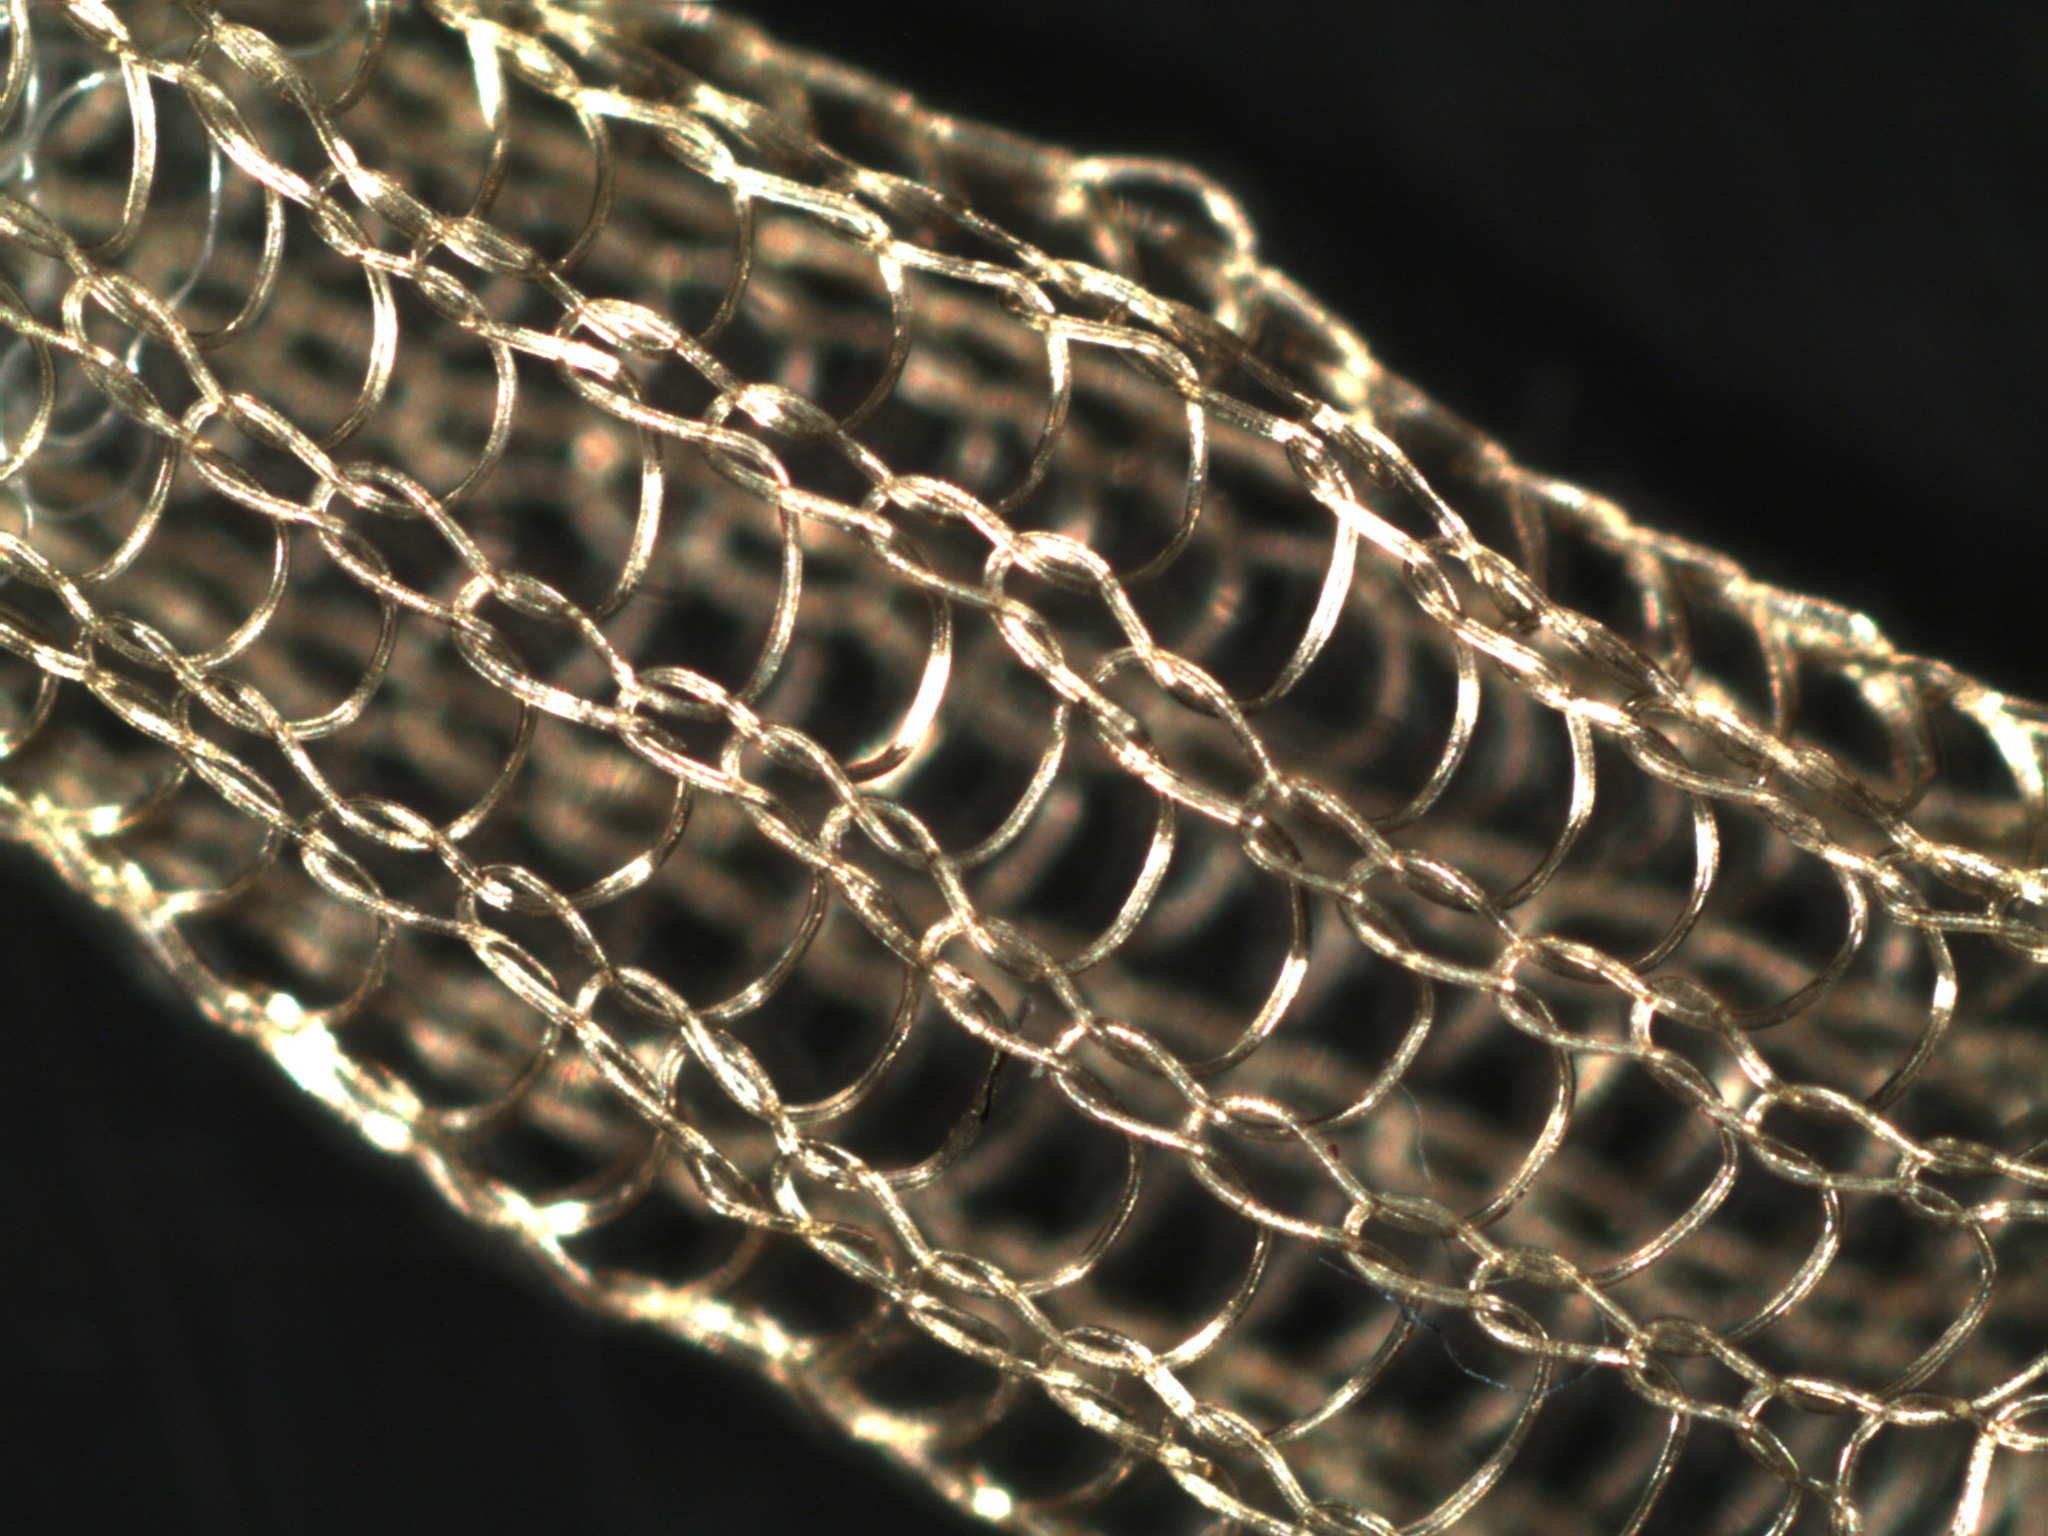 Biomimetic mesh